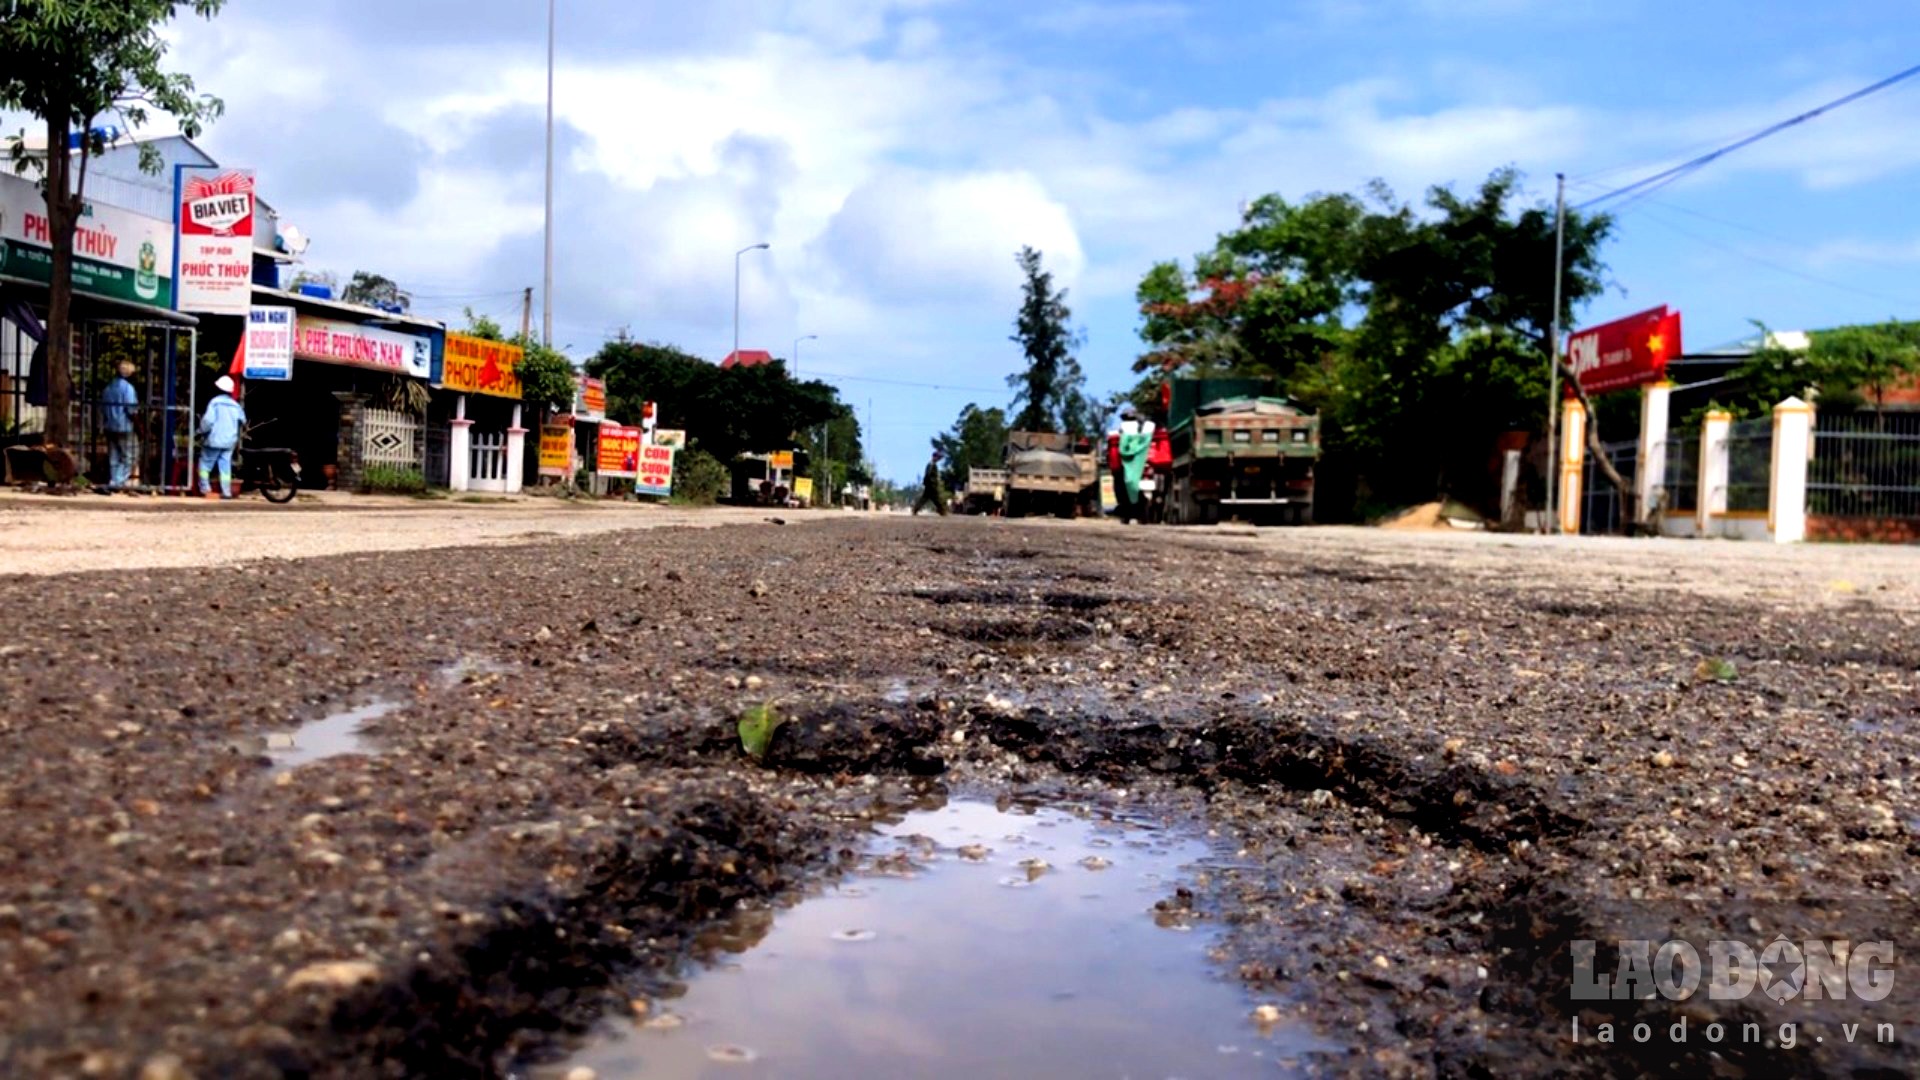 Đường xá trên tuyến Quốc lộ 24C đoạn qua huyện Bình Sơn ngày càng xuống cấp vì phải liên tục “gánh” những đoàn xe tải hạng nặng hoạt động quanh năm suốt tháng. Ảnh: Ngọc Viên